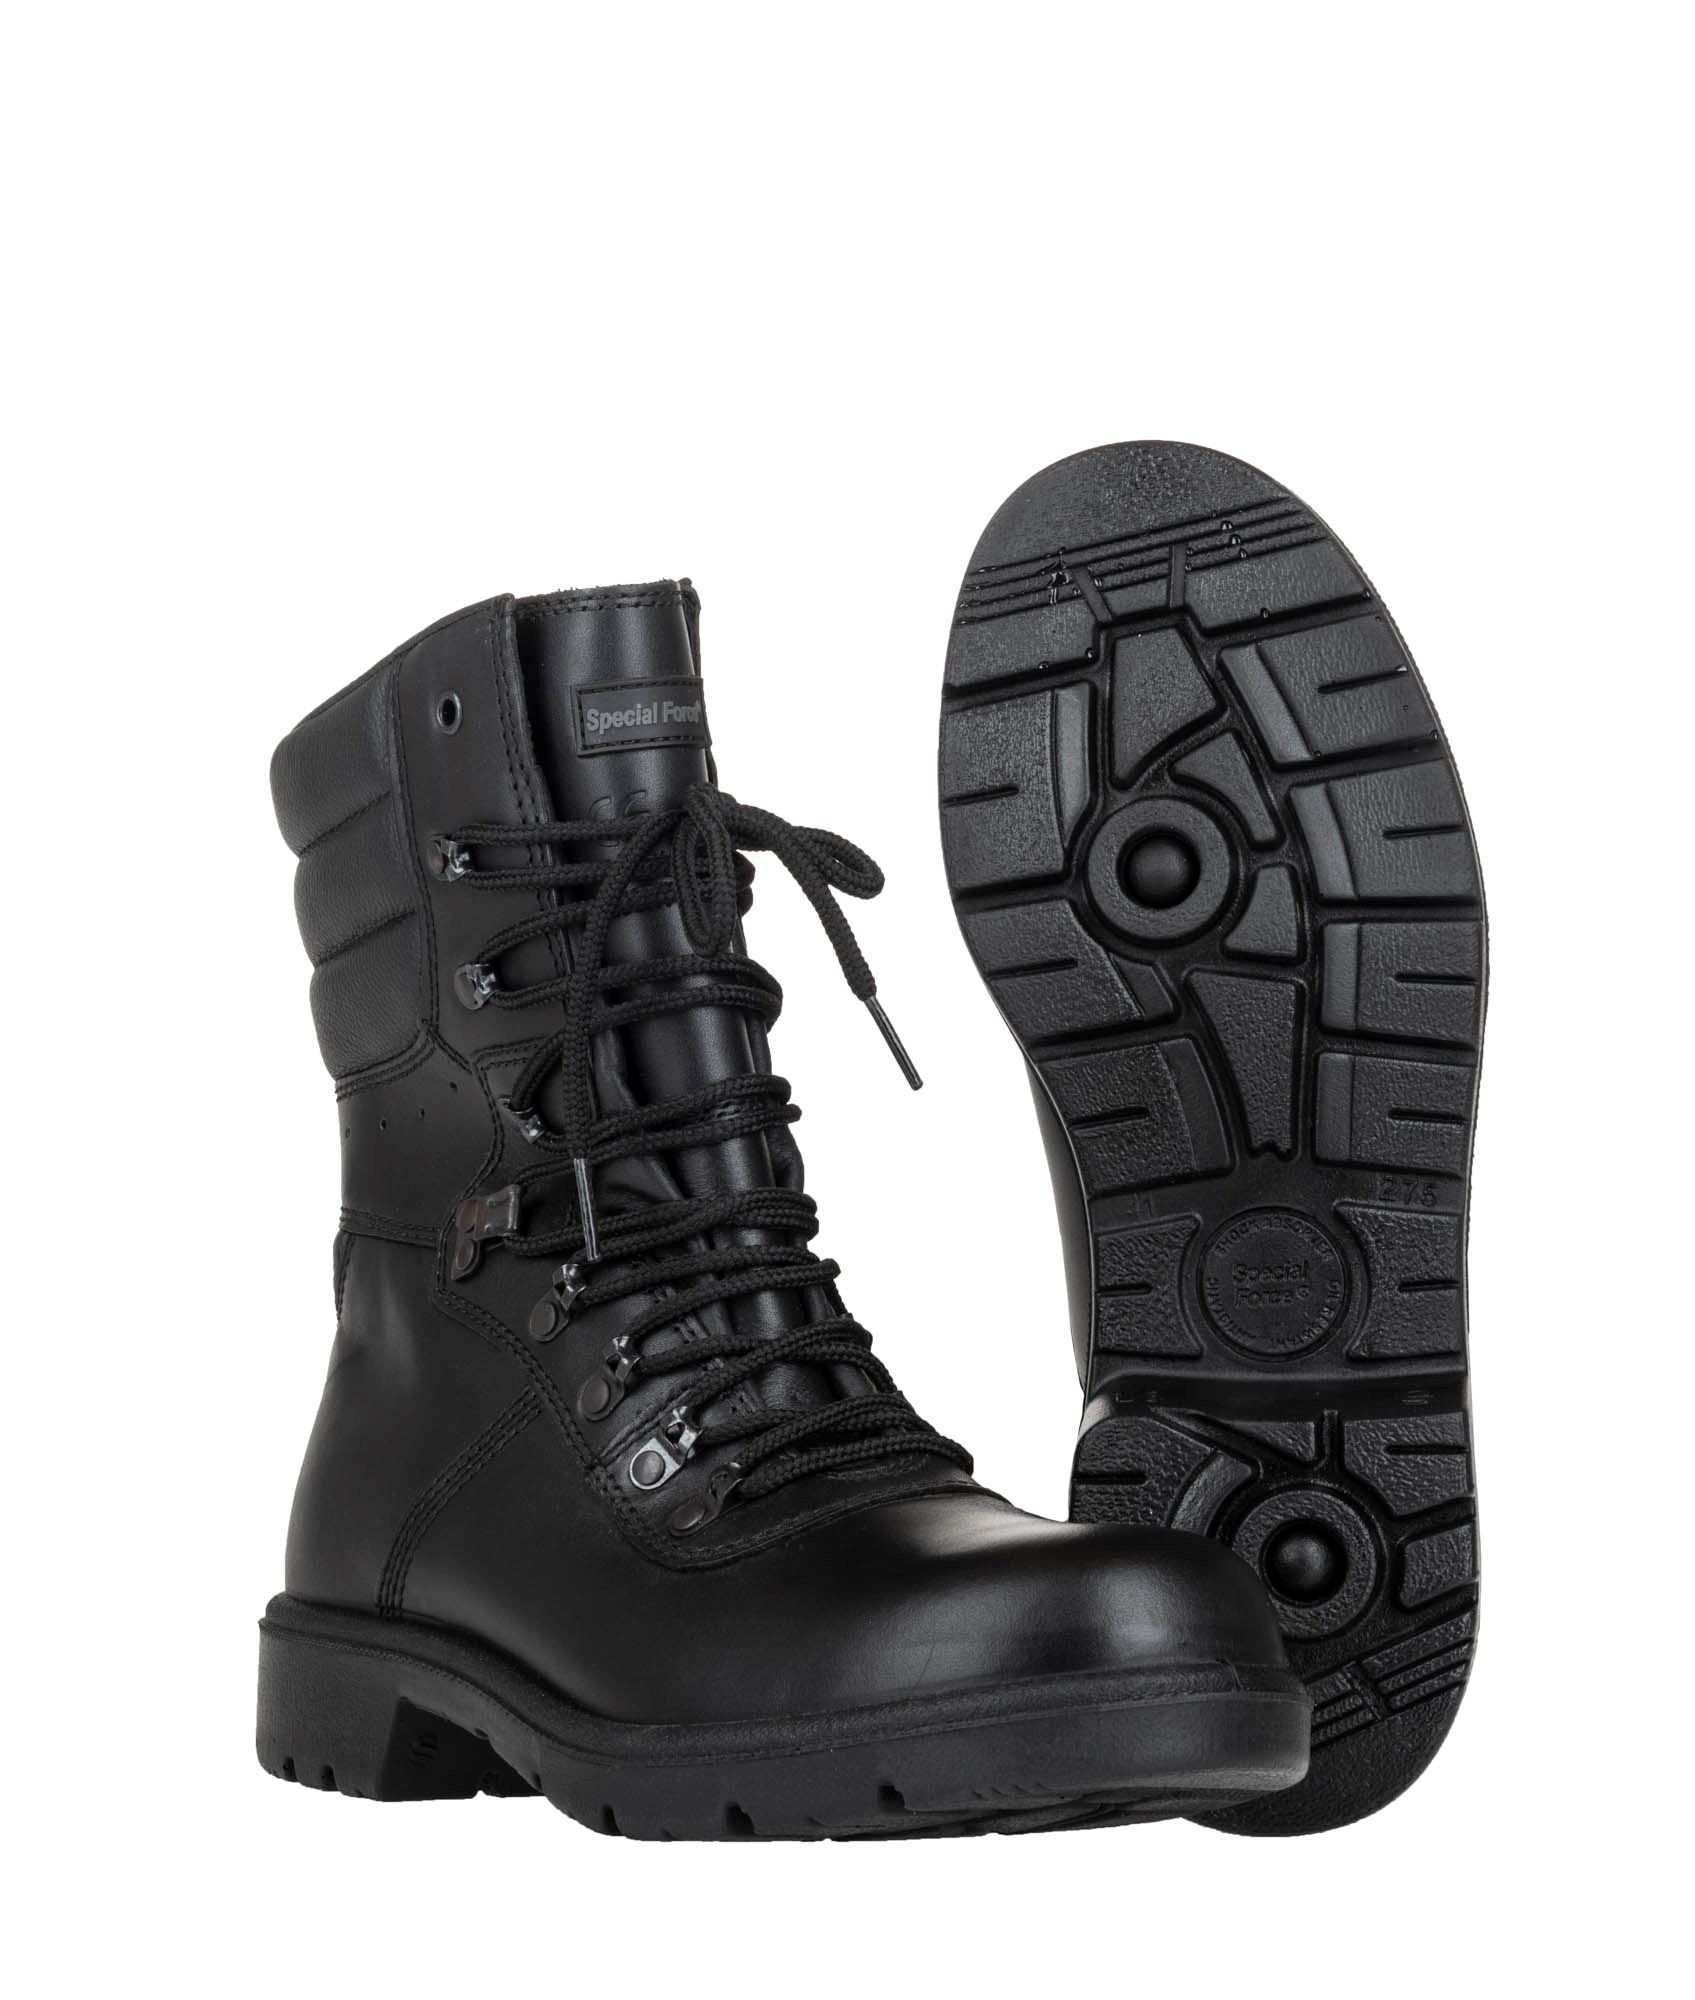 Regnfuld pedal kunstner Special Force militærstøvler fra forsvaret. Køb billigt hos 417.dk